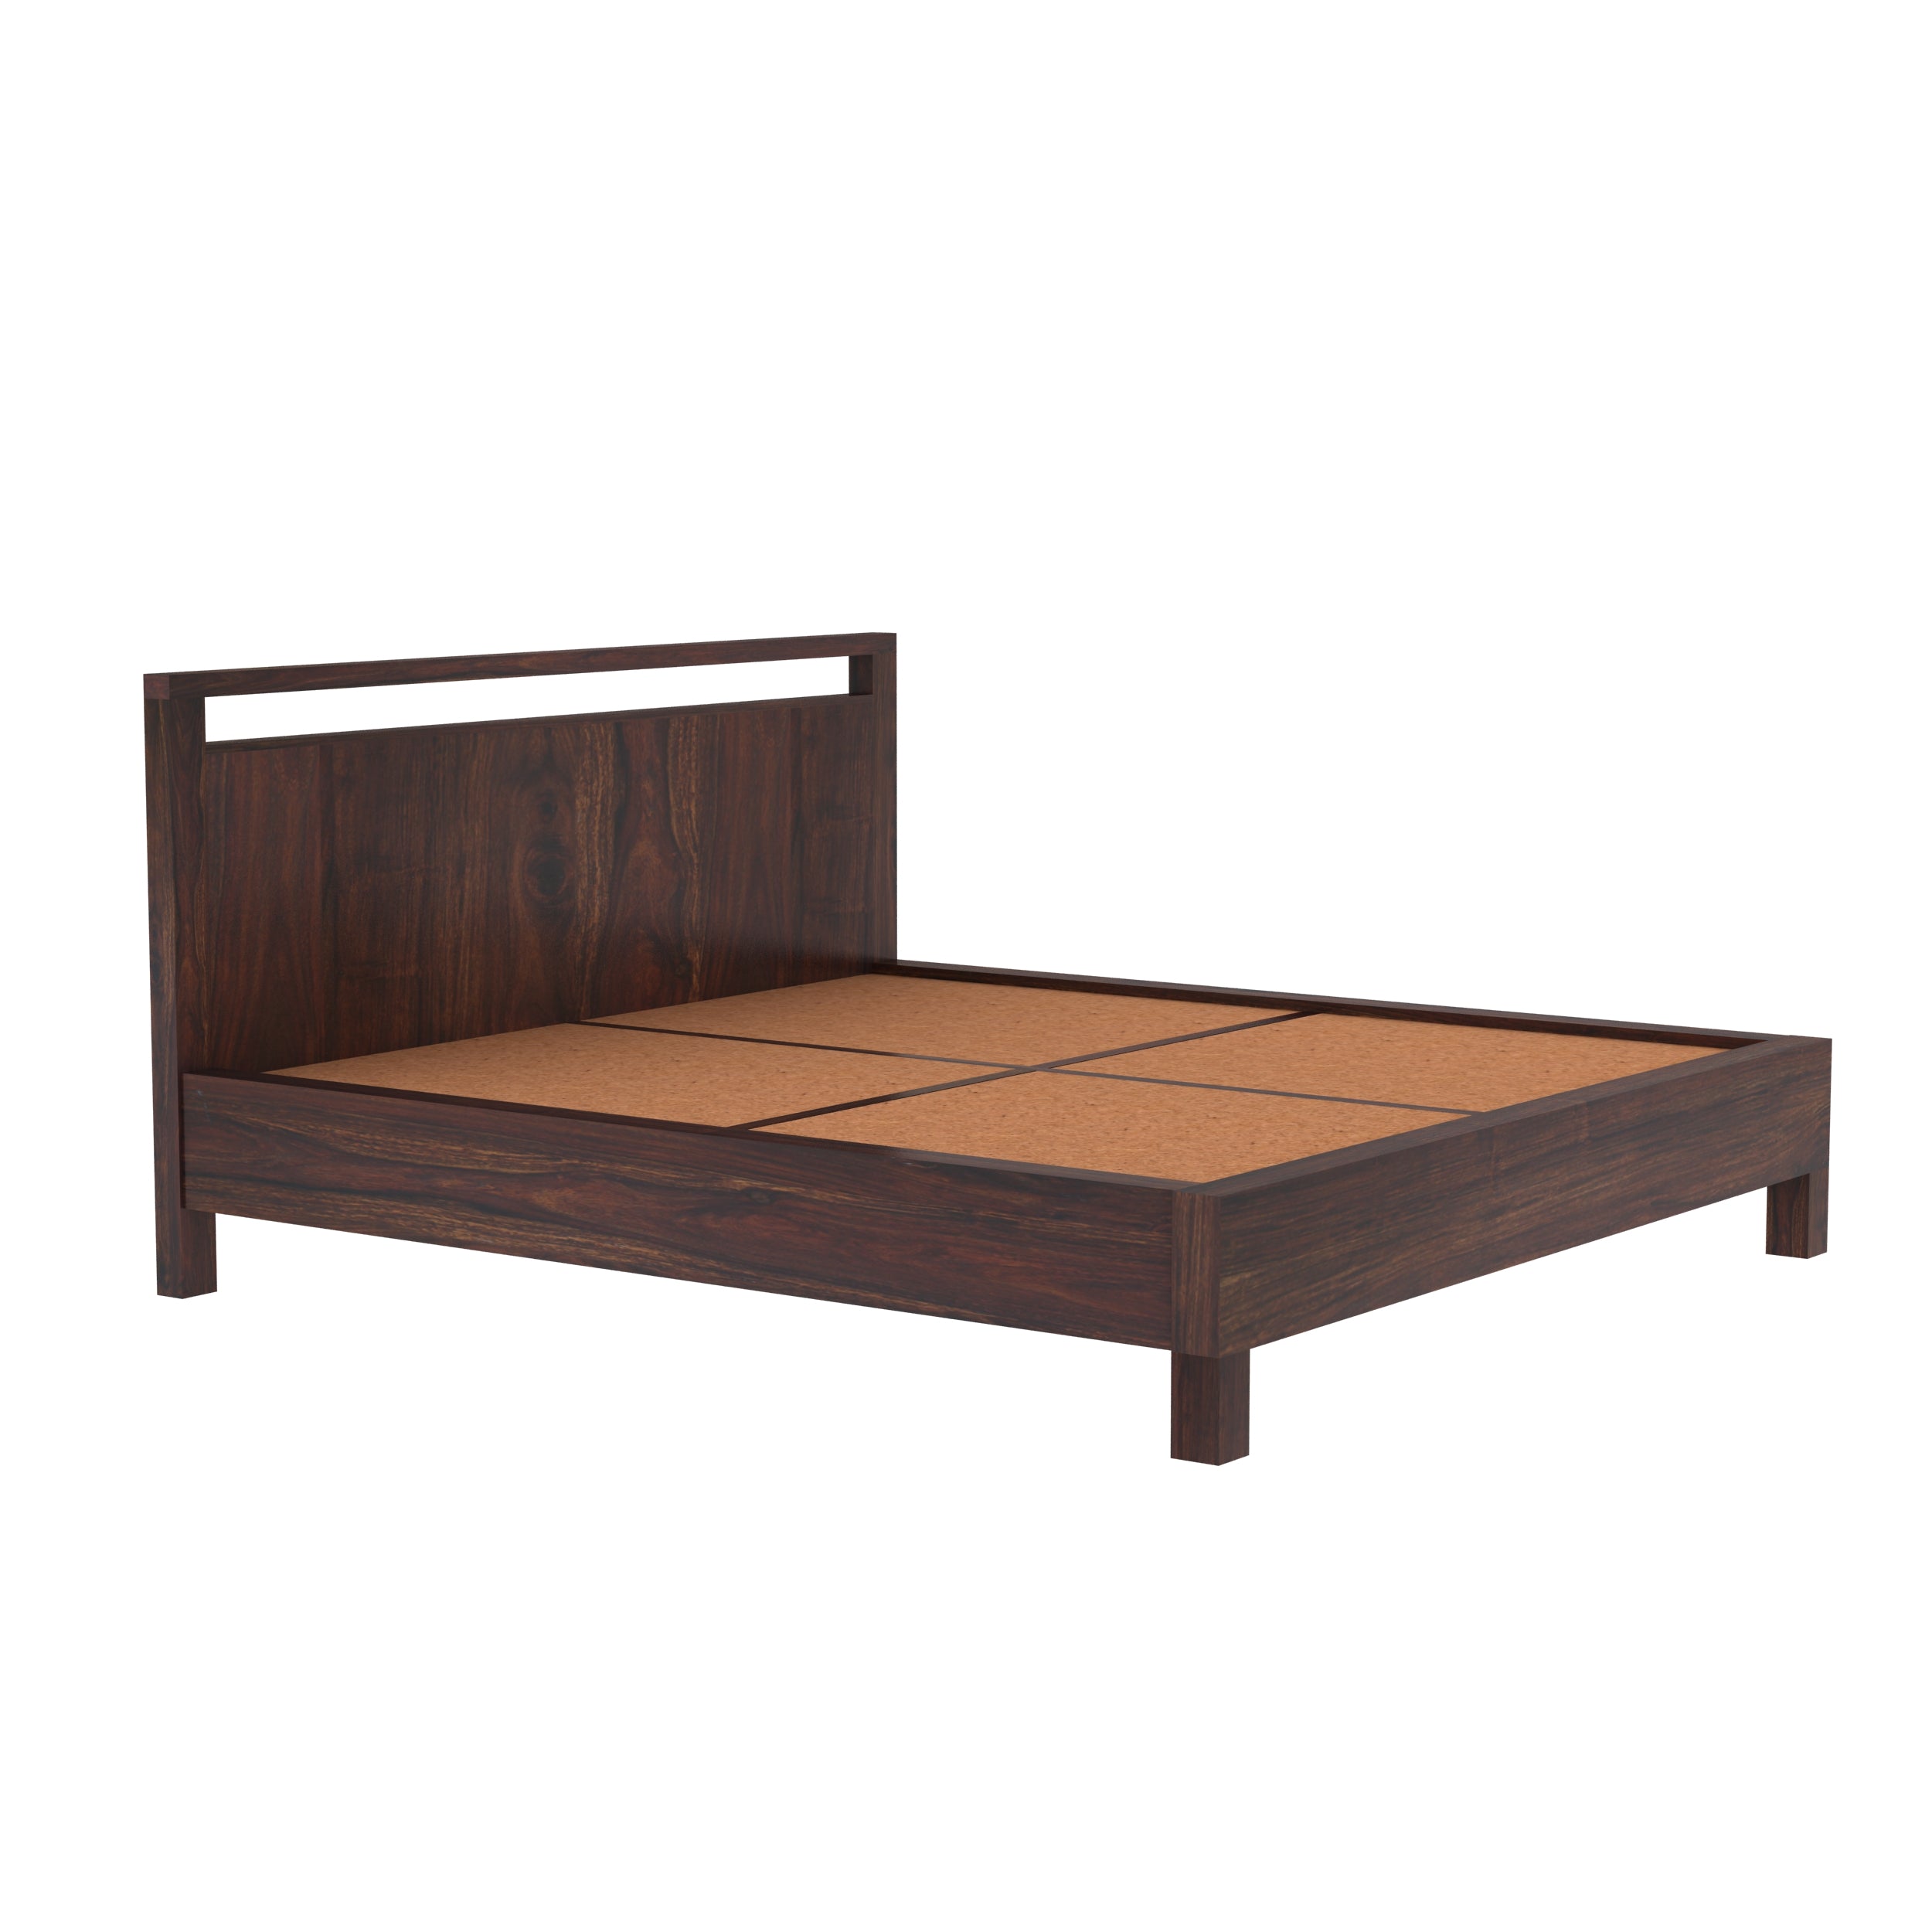 Denzaderb Solid Sheesham Wood Bed Without Storage (King Size, Walnut Finish)